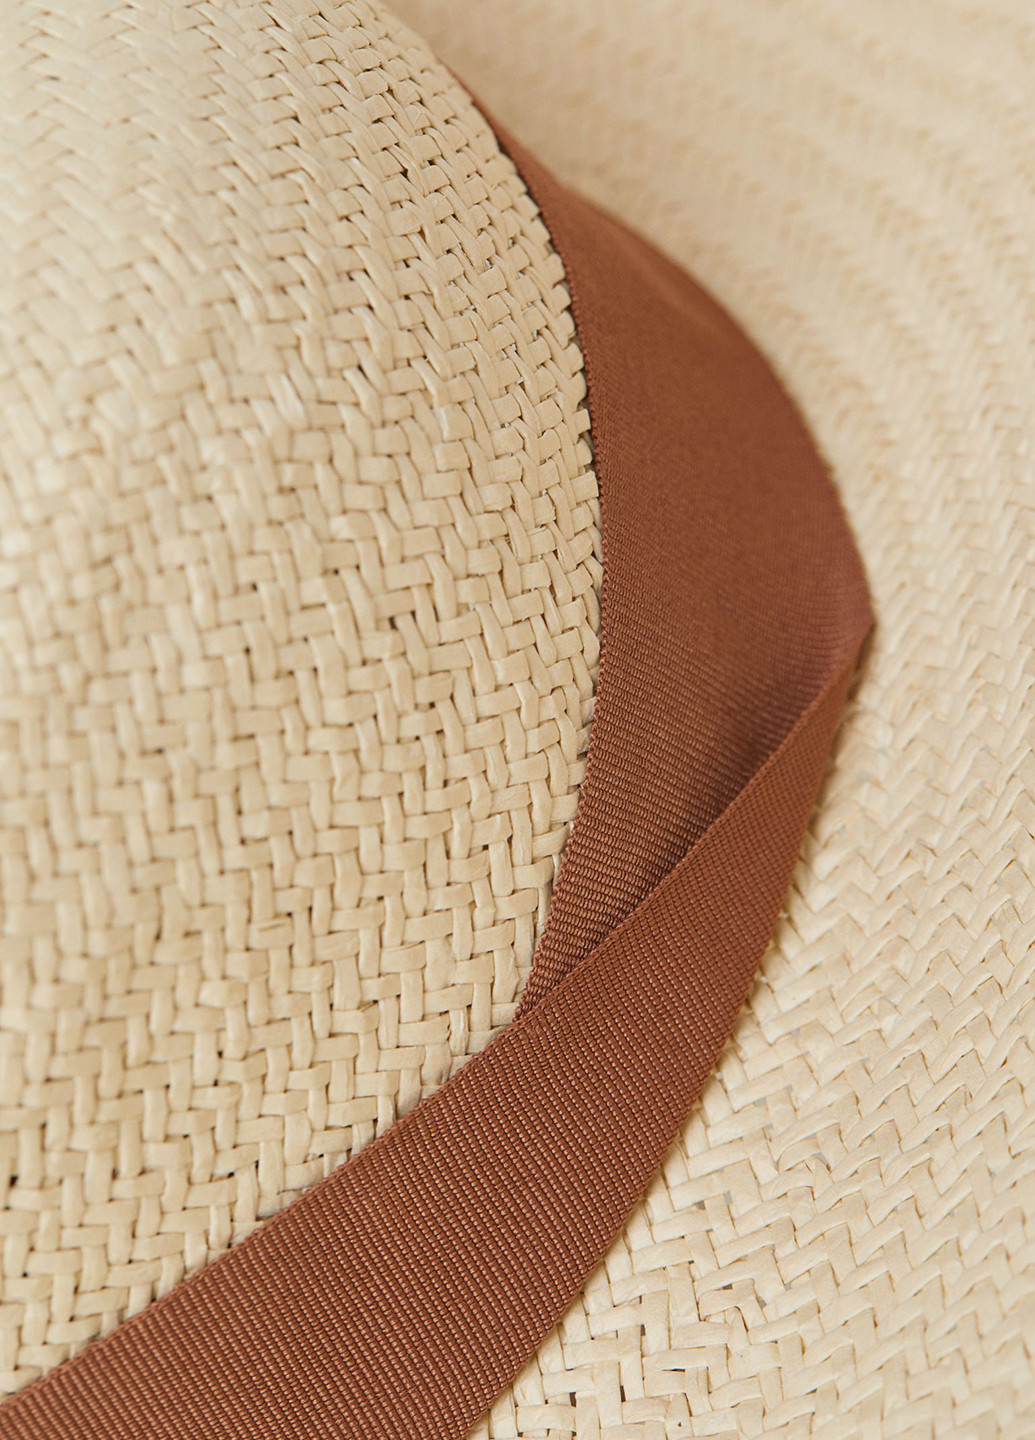 Шляпа H&M широкополая однотонная бежевая пляжная искусственная солома